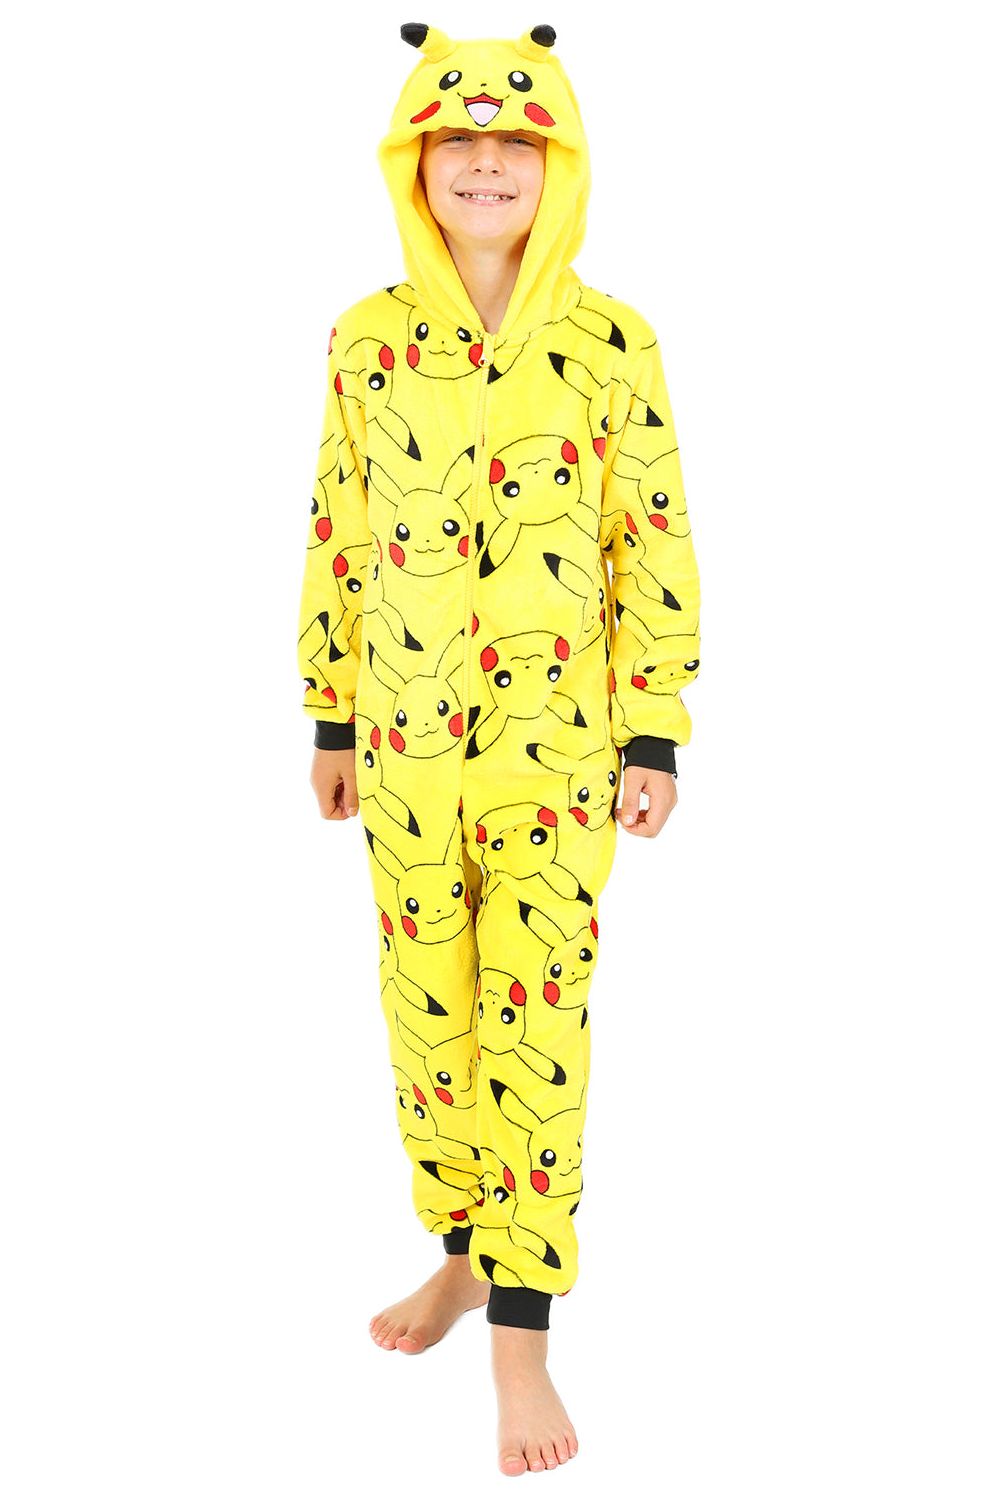 Pikachu Yellow Pokémon Boys Girls Fleece Sleepsuit Kids All in One